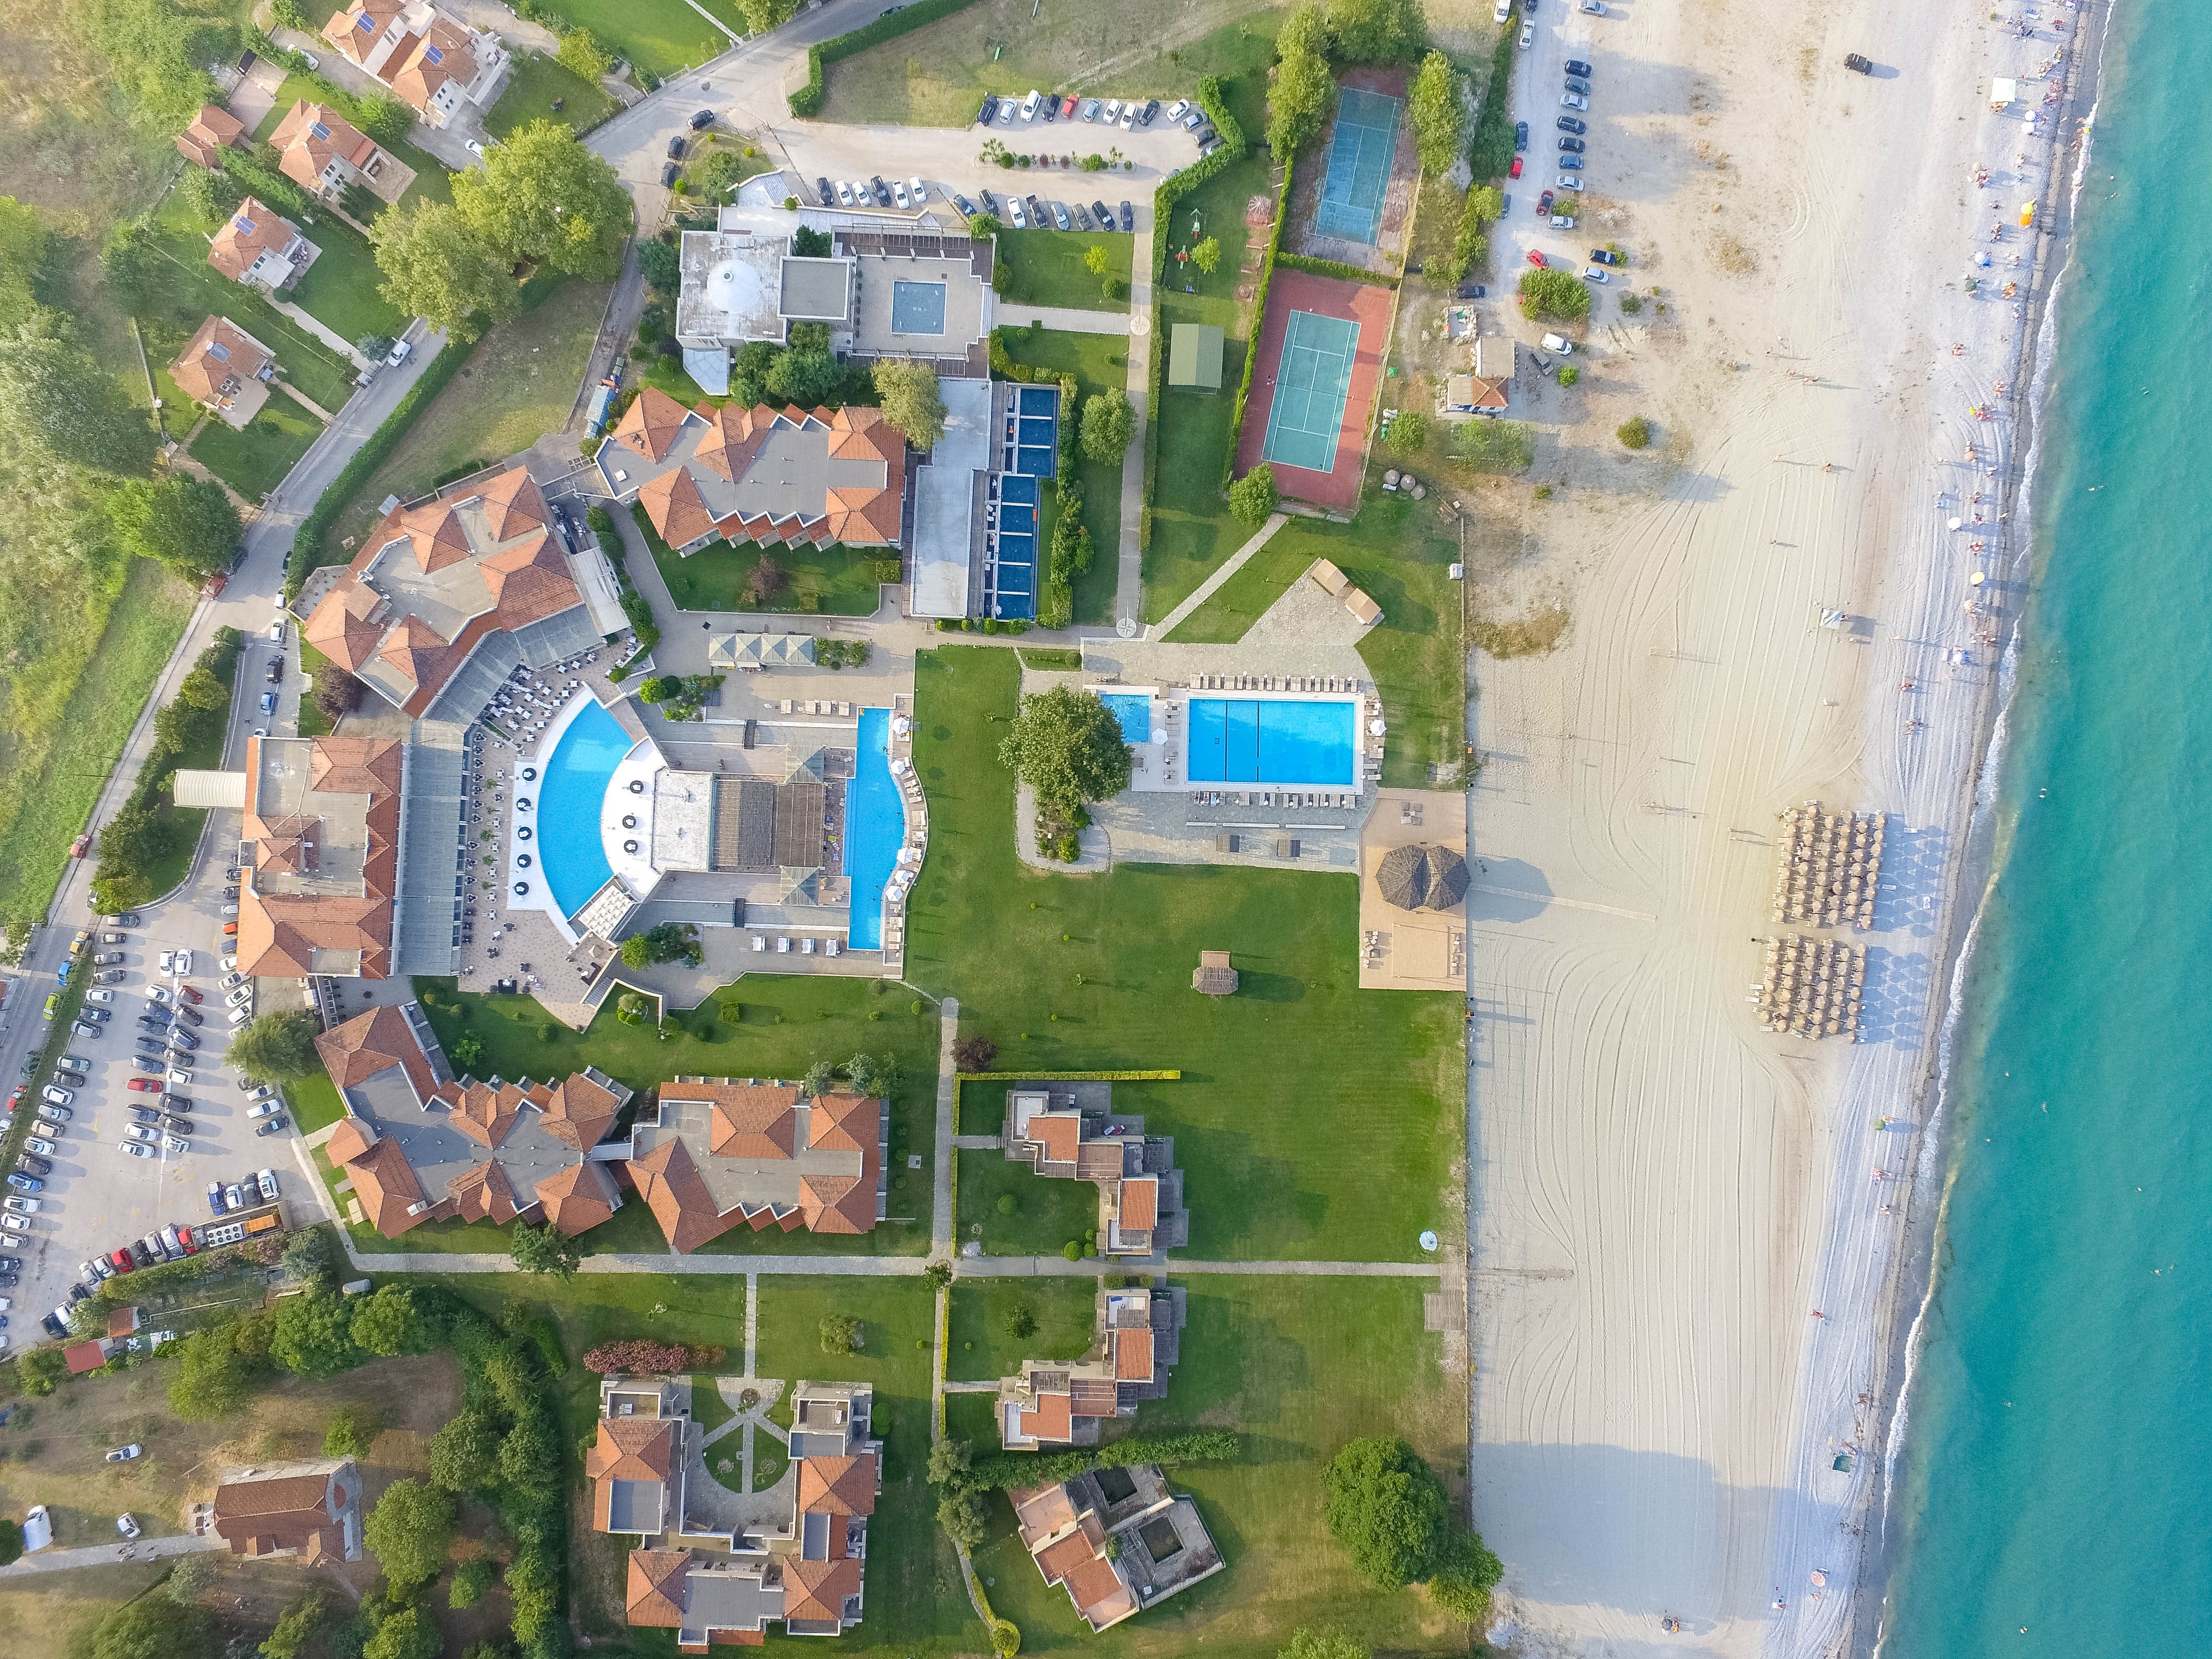 5* Dion Palace Luxury Resort &amp; Spa - Λιτόχωρο ✦ -50% ✦ 3 Ημέρες (2 Διανυκτερεύσεις) ✦ 2 άτομα + 1 παιδί έως 12 ετών ✦ 8 ✦ 23/05/2023 έως 10/06/2023 και 18/09/2023 έως 30/09/2023 ✦ Μπροστά σε παραλία!